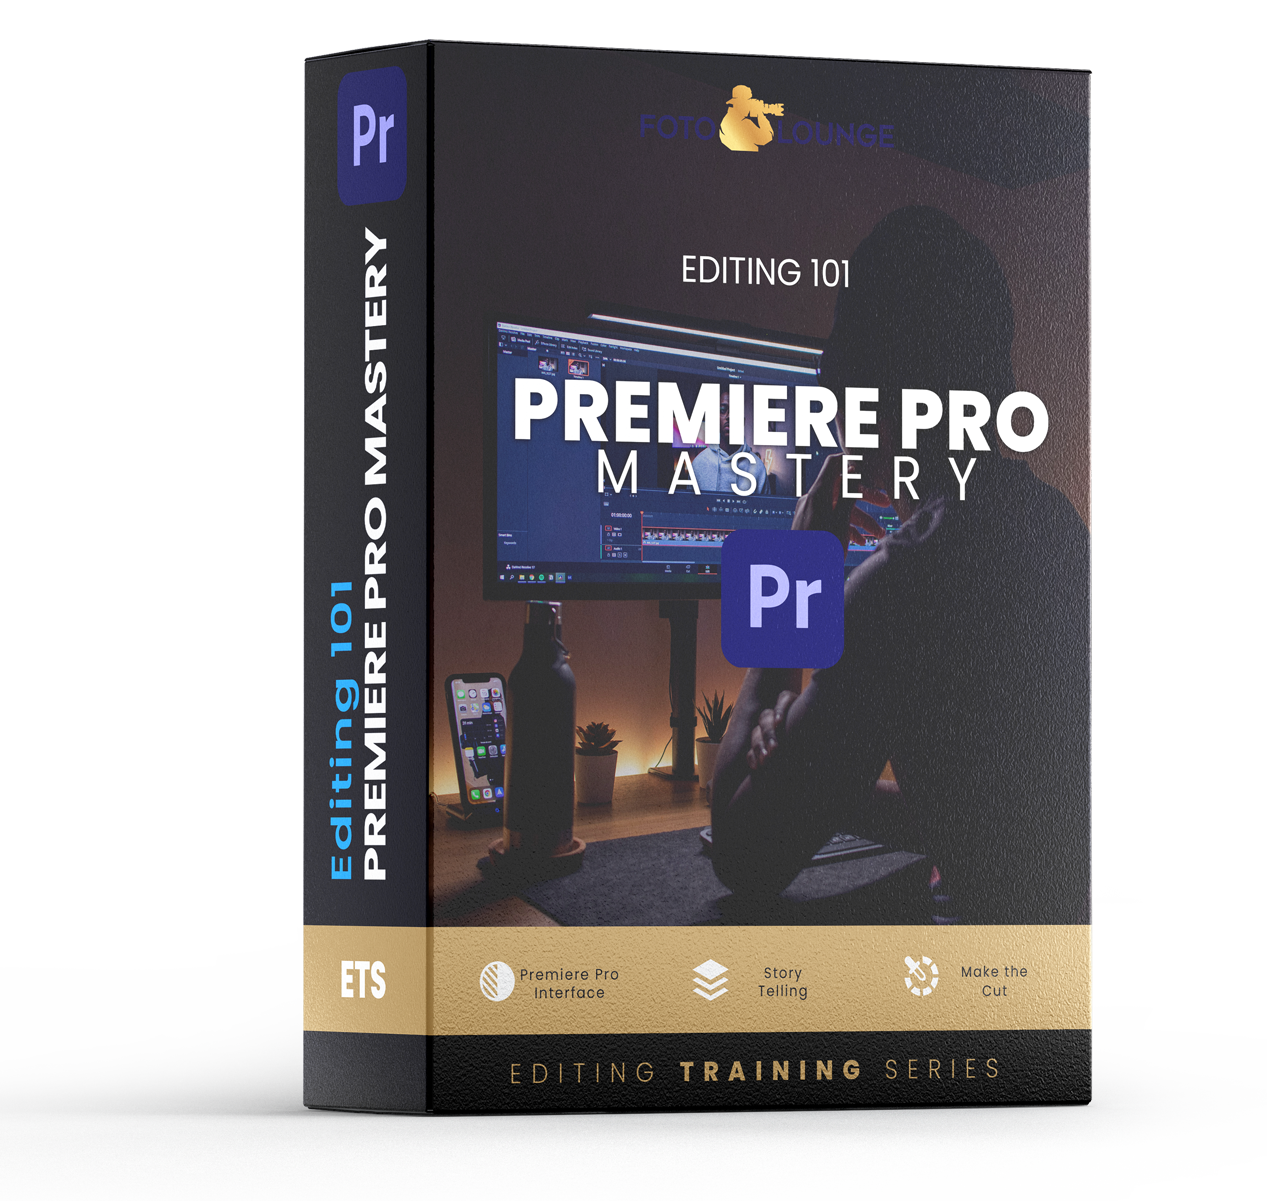 Premiere Pro Mastery